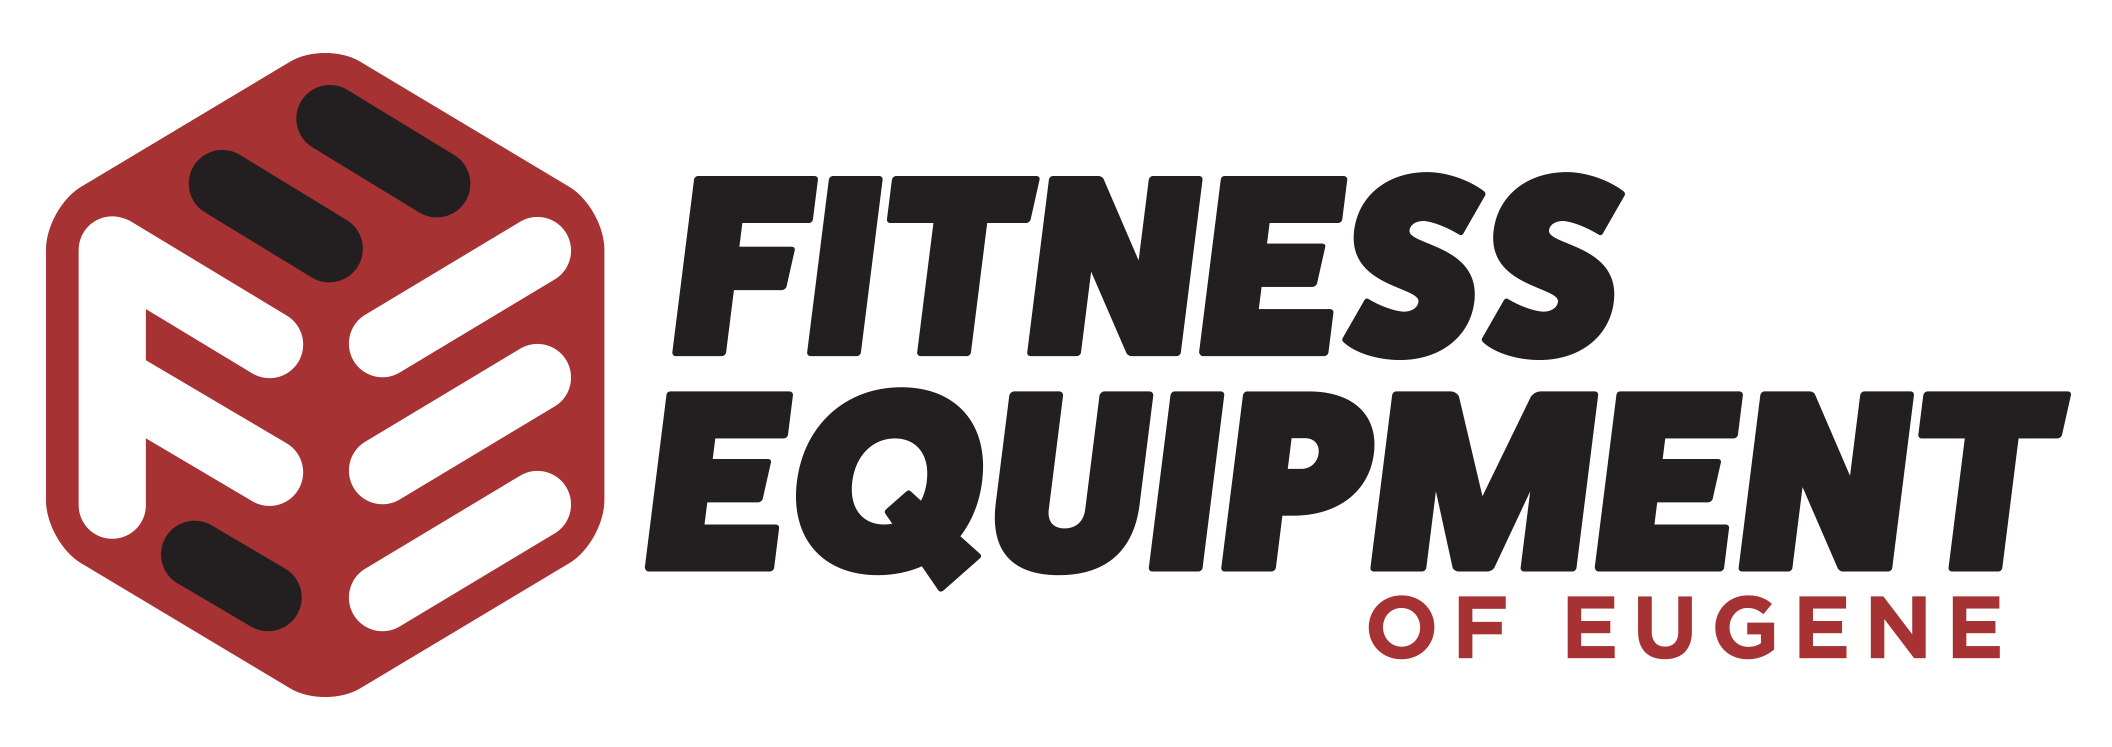 Eugene Logo - Home Landing Page - Fitness Equipment of Eugene